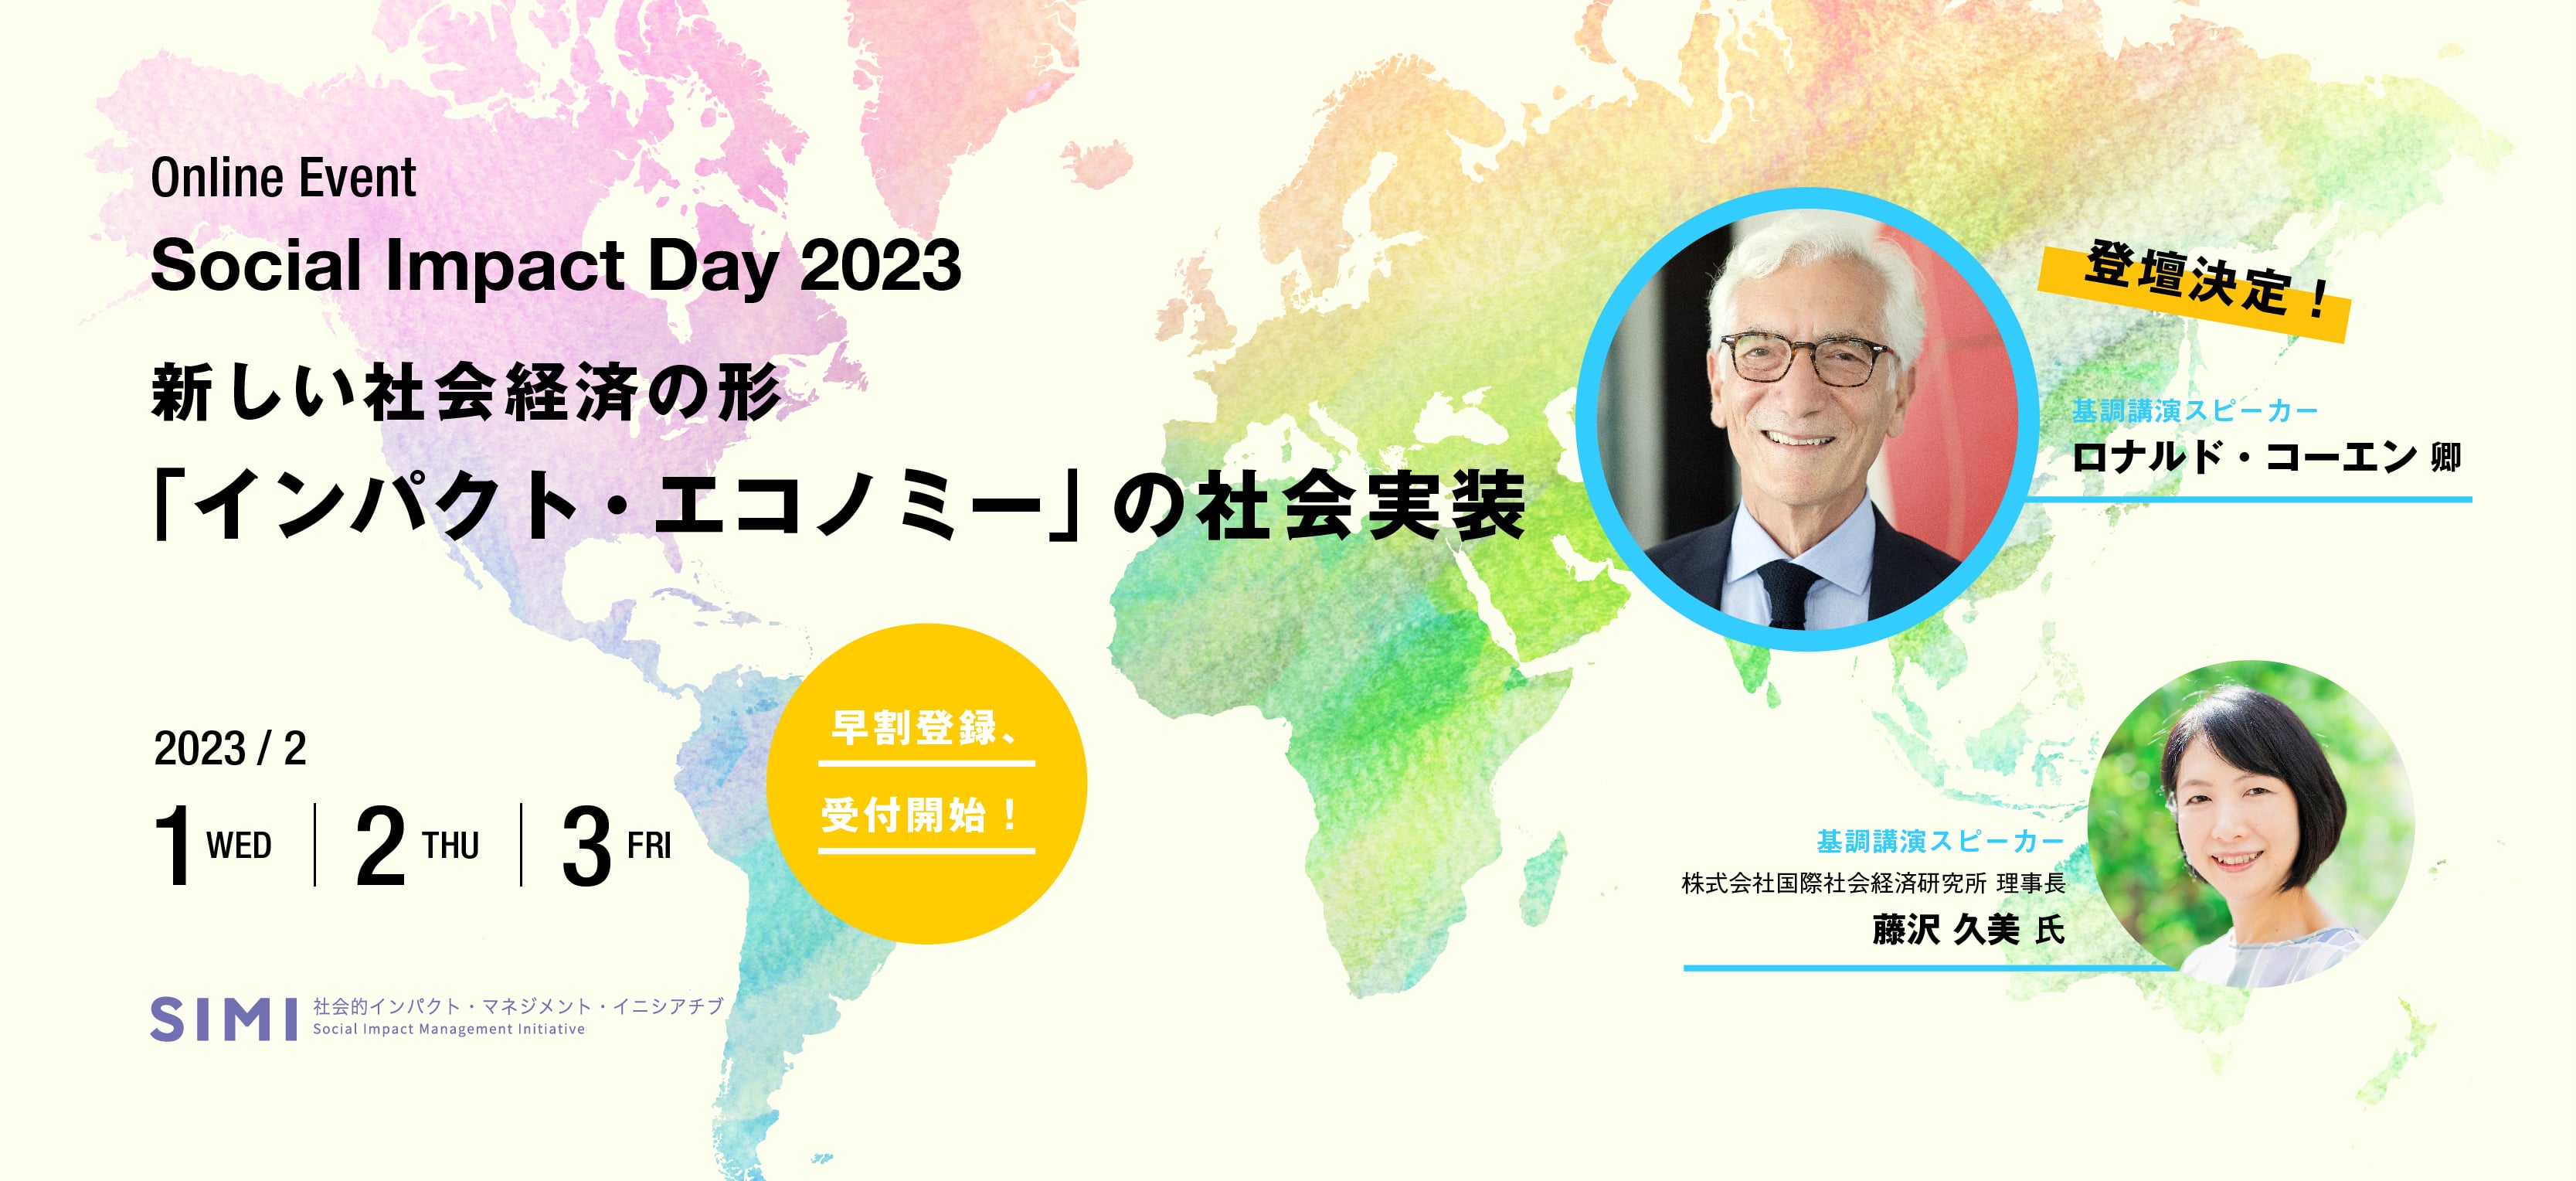 「Social Impact Day 2023」開催のお知らせ～～ロナルド・コーエン卿が登壇！！～～